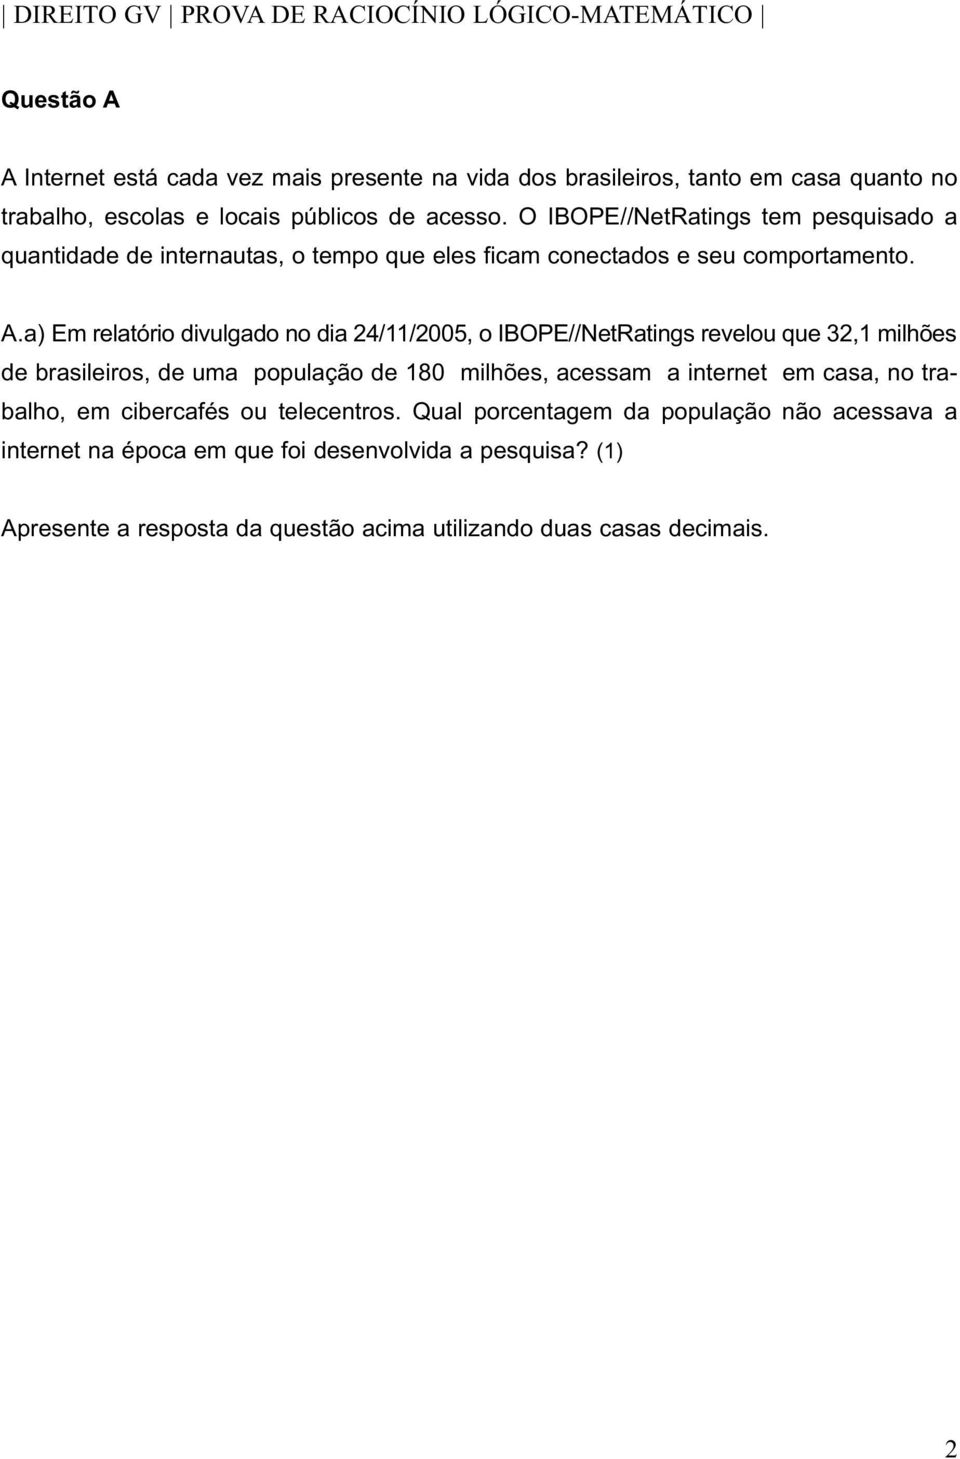 a) Em relatório divulgado no dia 24/11/2005, o IBOPE//NetRatings revelou que 32,1 de brasileiros, de uma população de 180, acessam a internet em casa, no